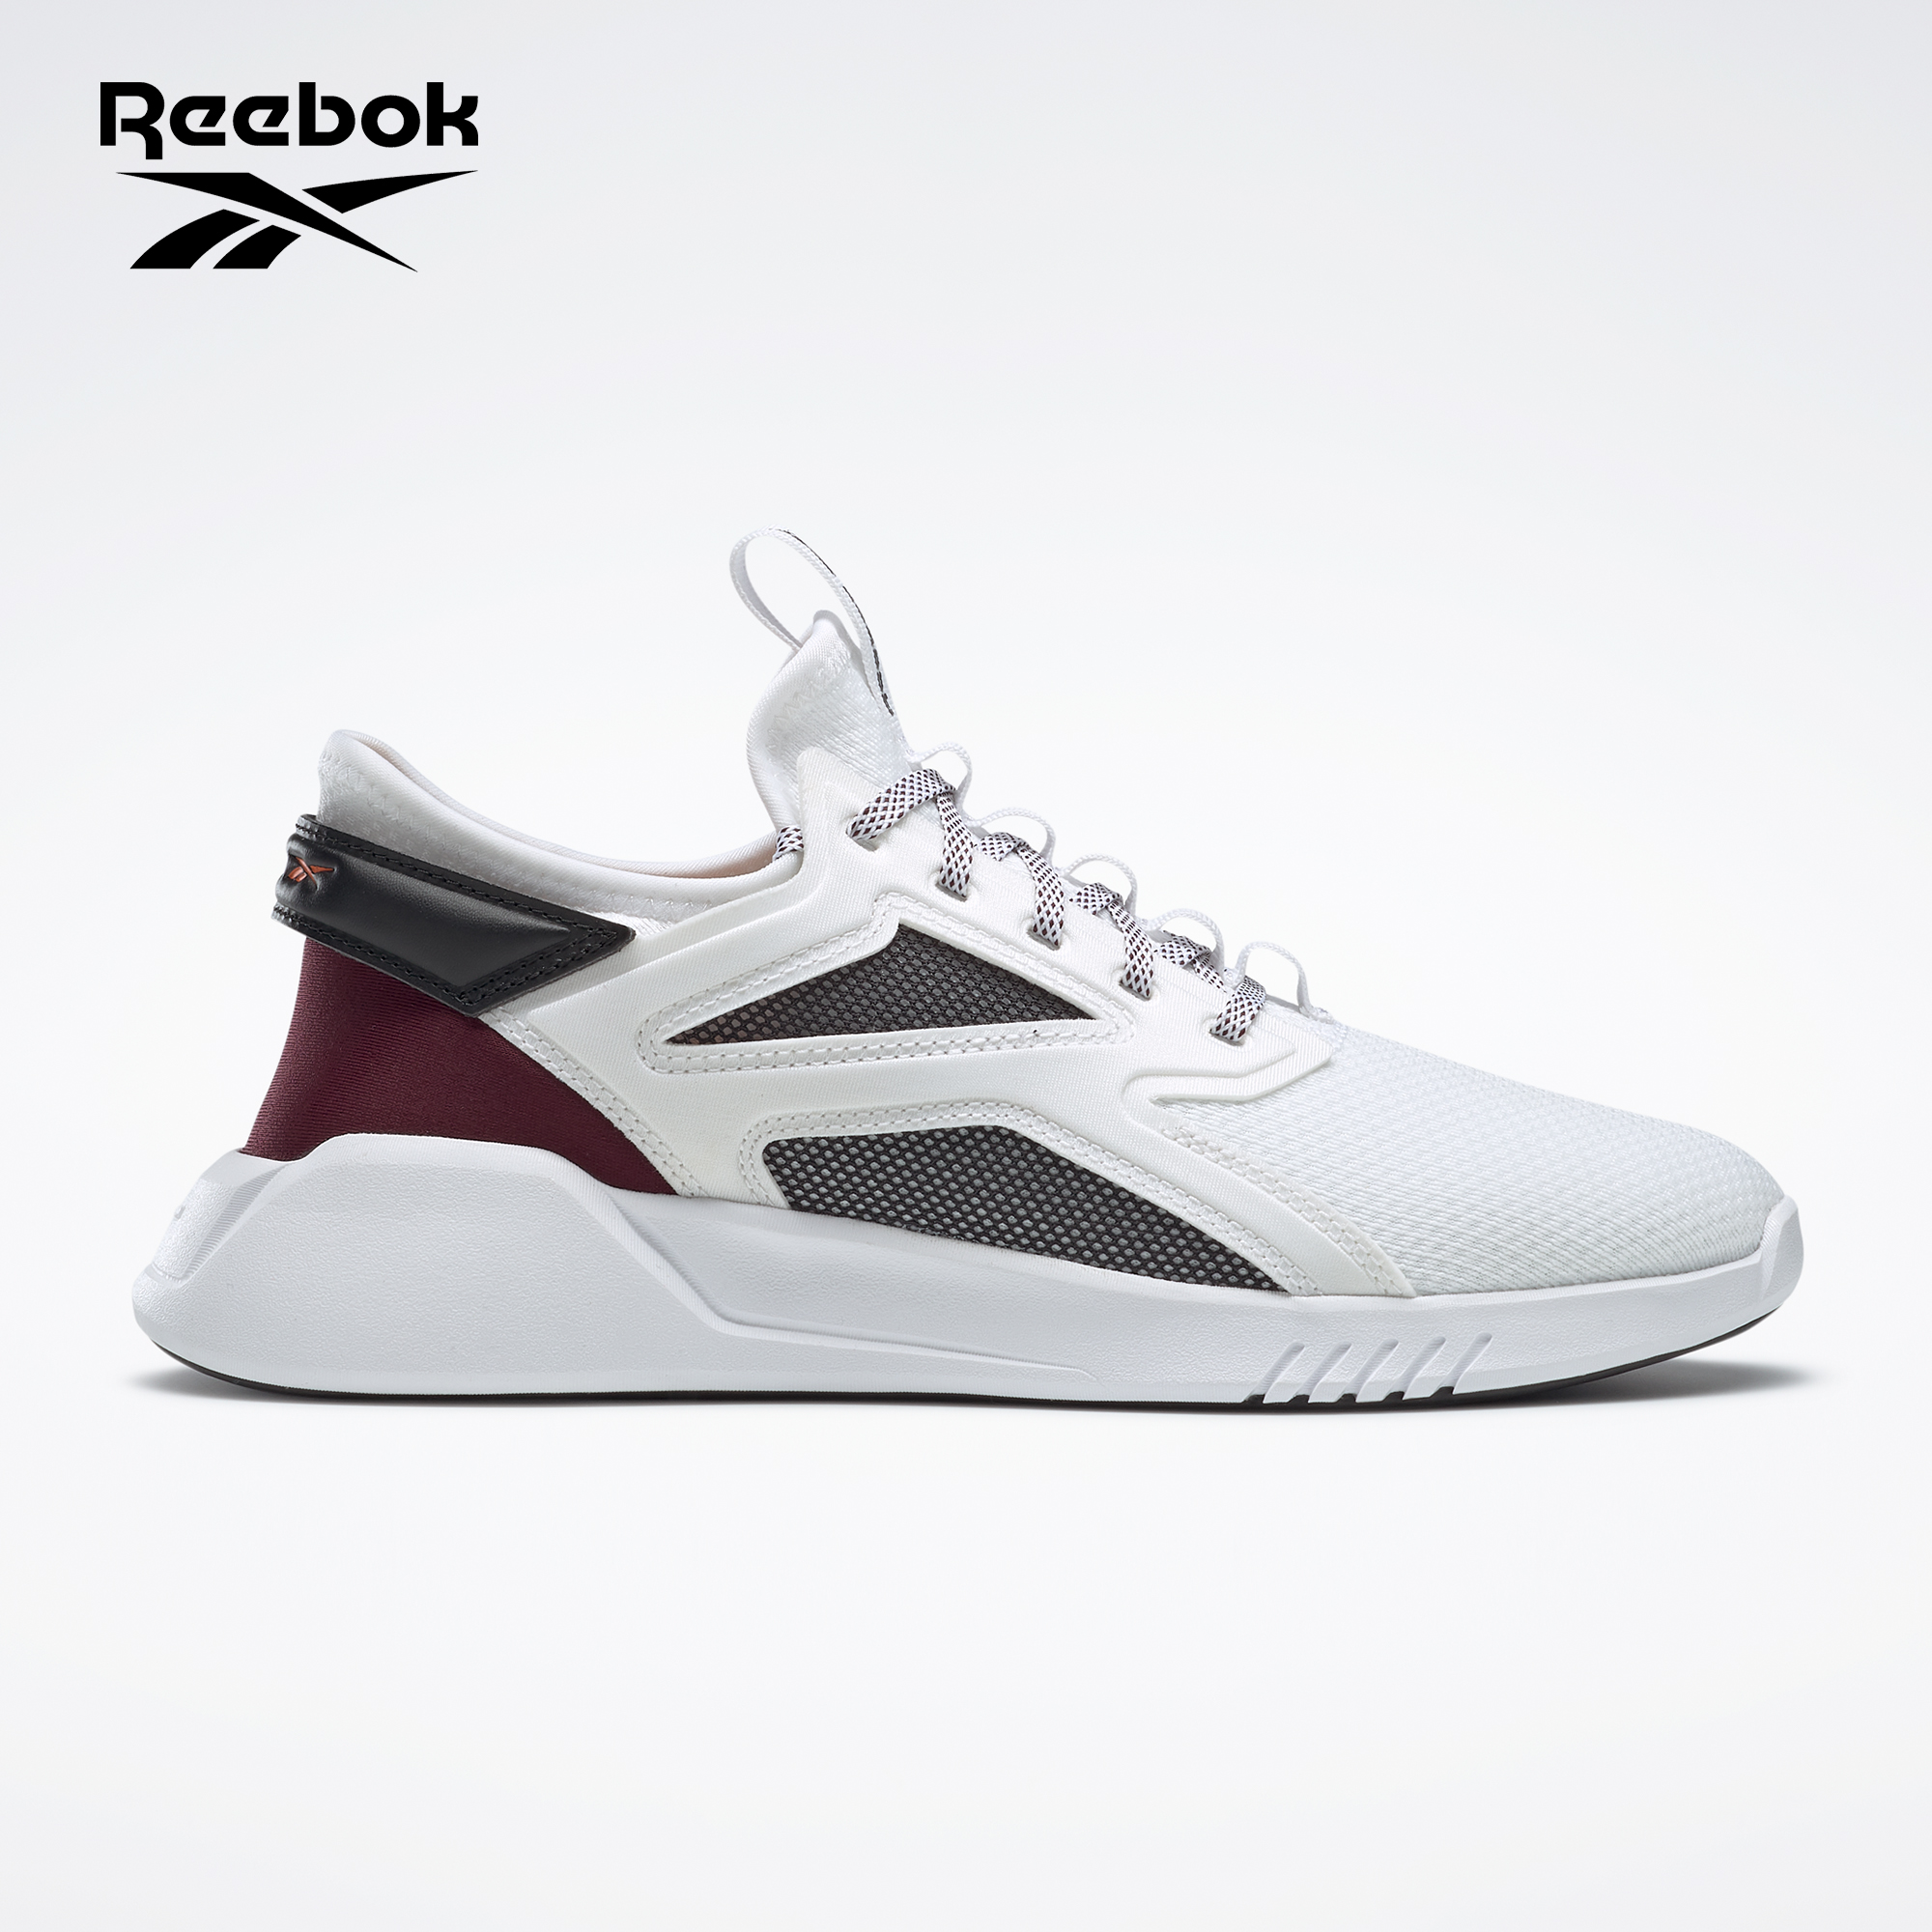 reebok shoes minimum price